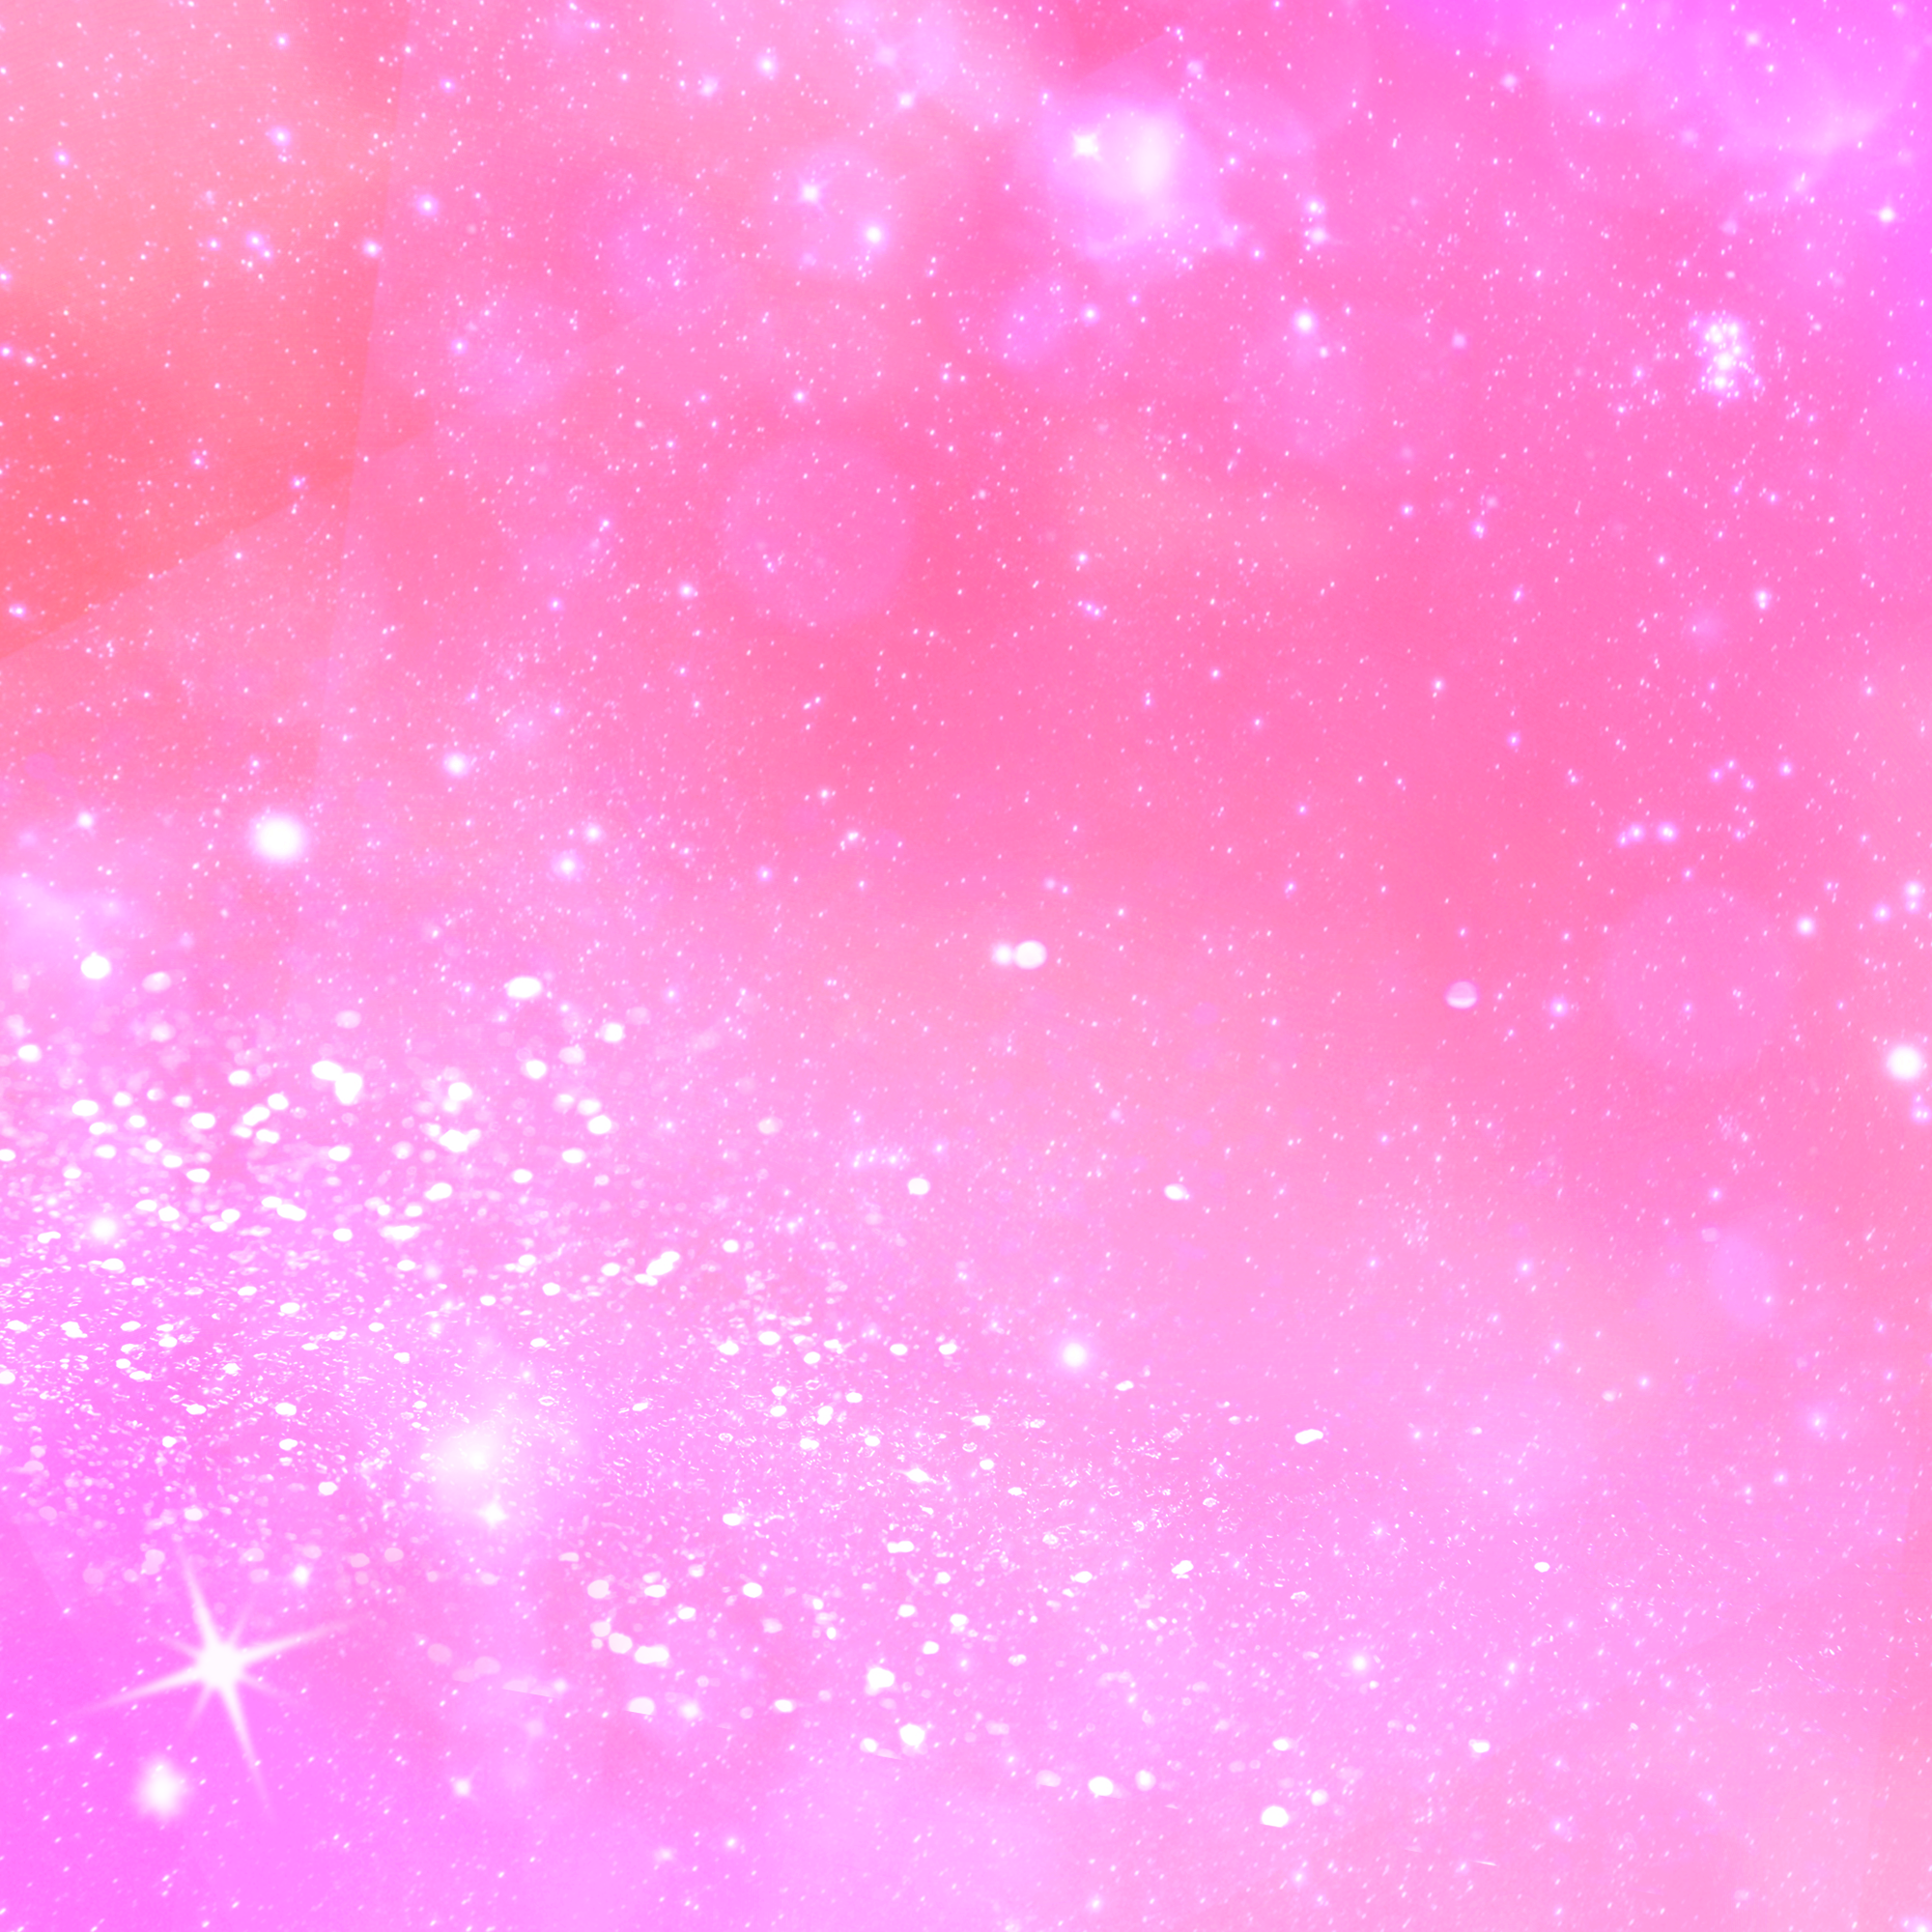 ピンクの宇宙柄素材、使ってみてね！#FreeToEdit #宇宙柄 #galaxy #ピンク